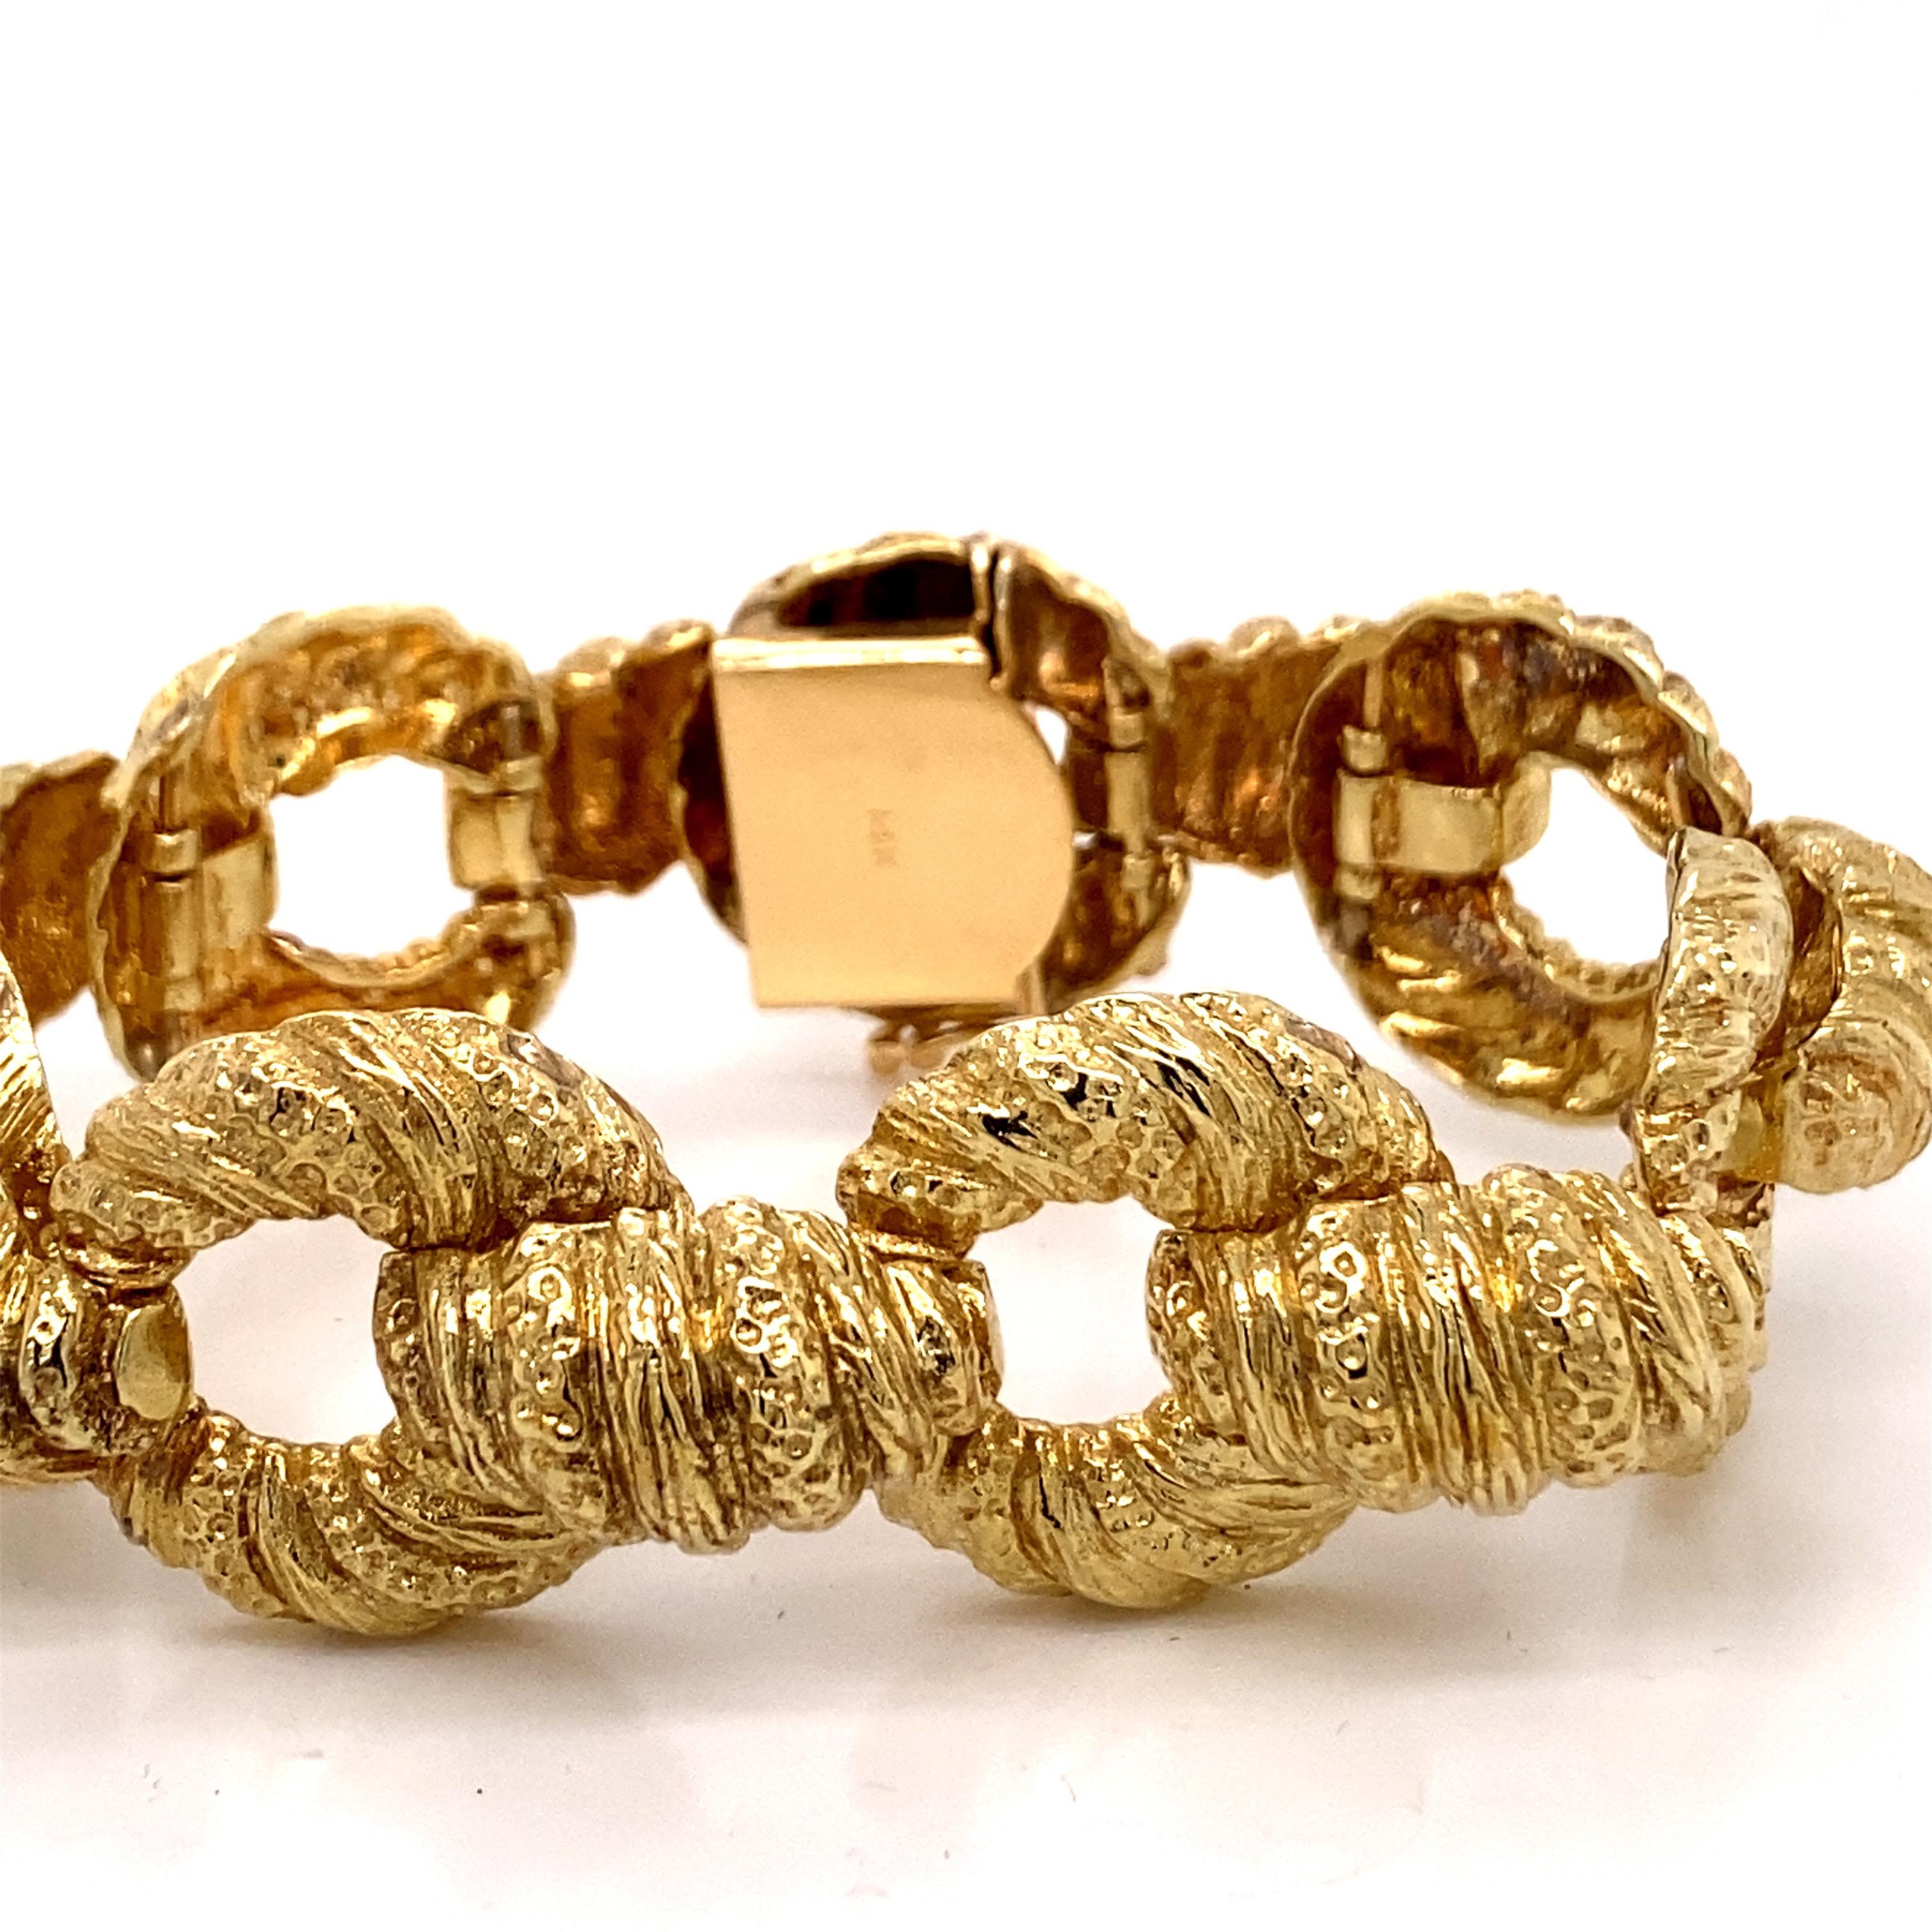 Vintage 1960s 14K Yellow Gold Heavy Link Bracelet - Das Armband ist aus gegossenem massivem Gold Links gemacht und misst 7,25 cm lang und .80 cm breit. Das Armband verfügt über eine verdeckte Schließe mit einer 8er-Sicherung für einen durchgehenden